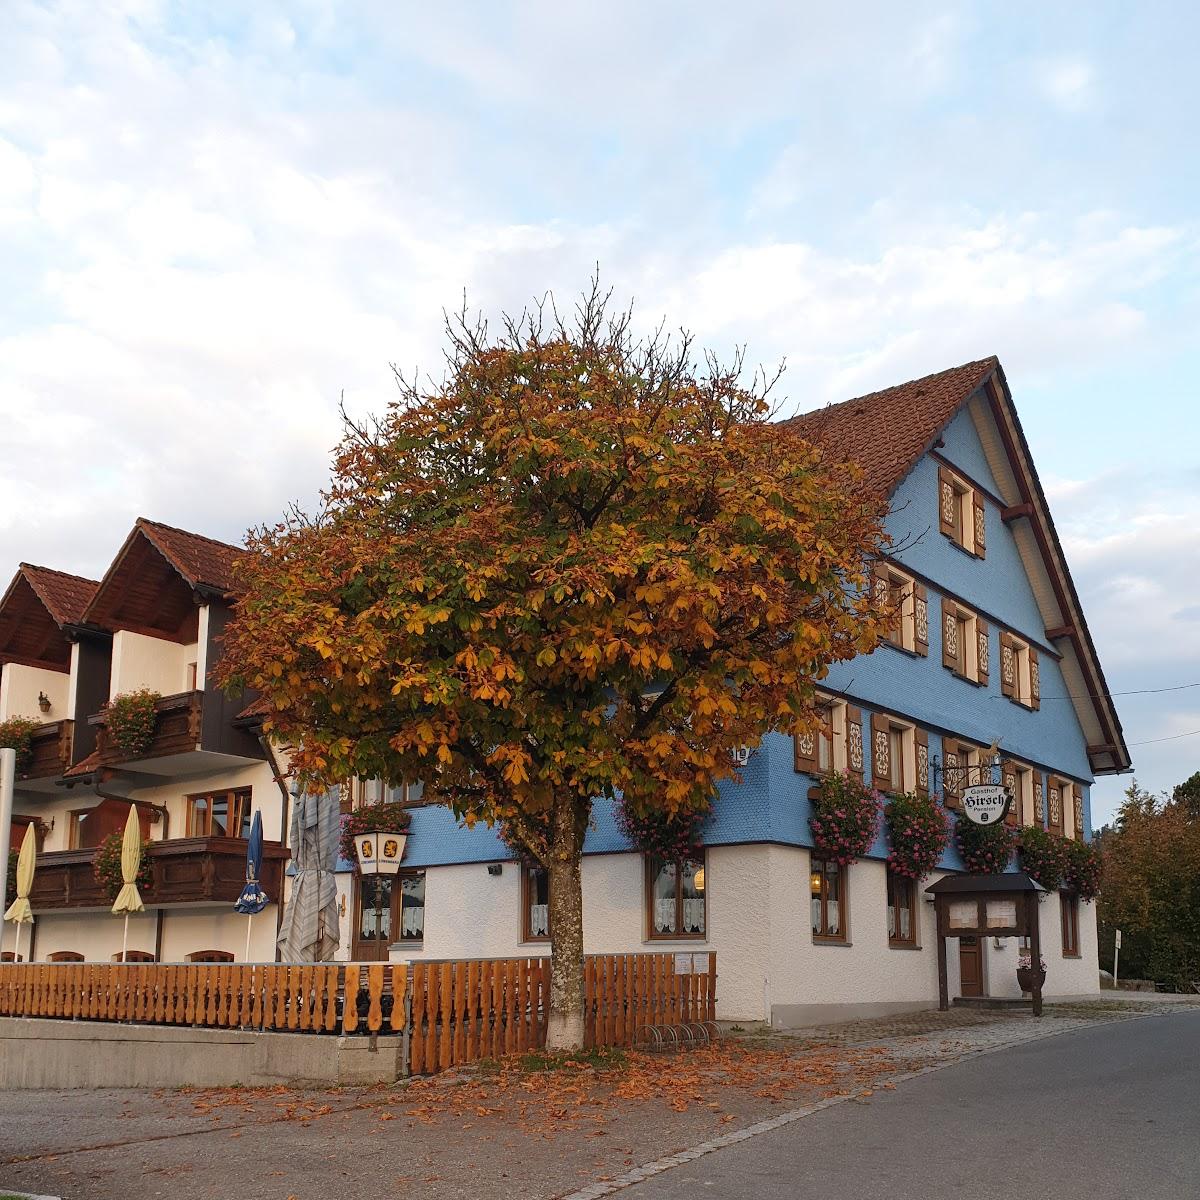 Restaurant "Landhotel Ellerhof" in Scheidegg im Allgäu